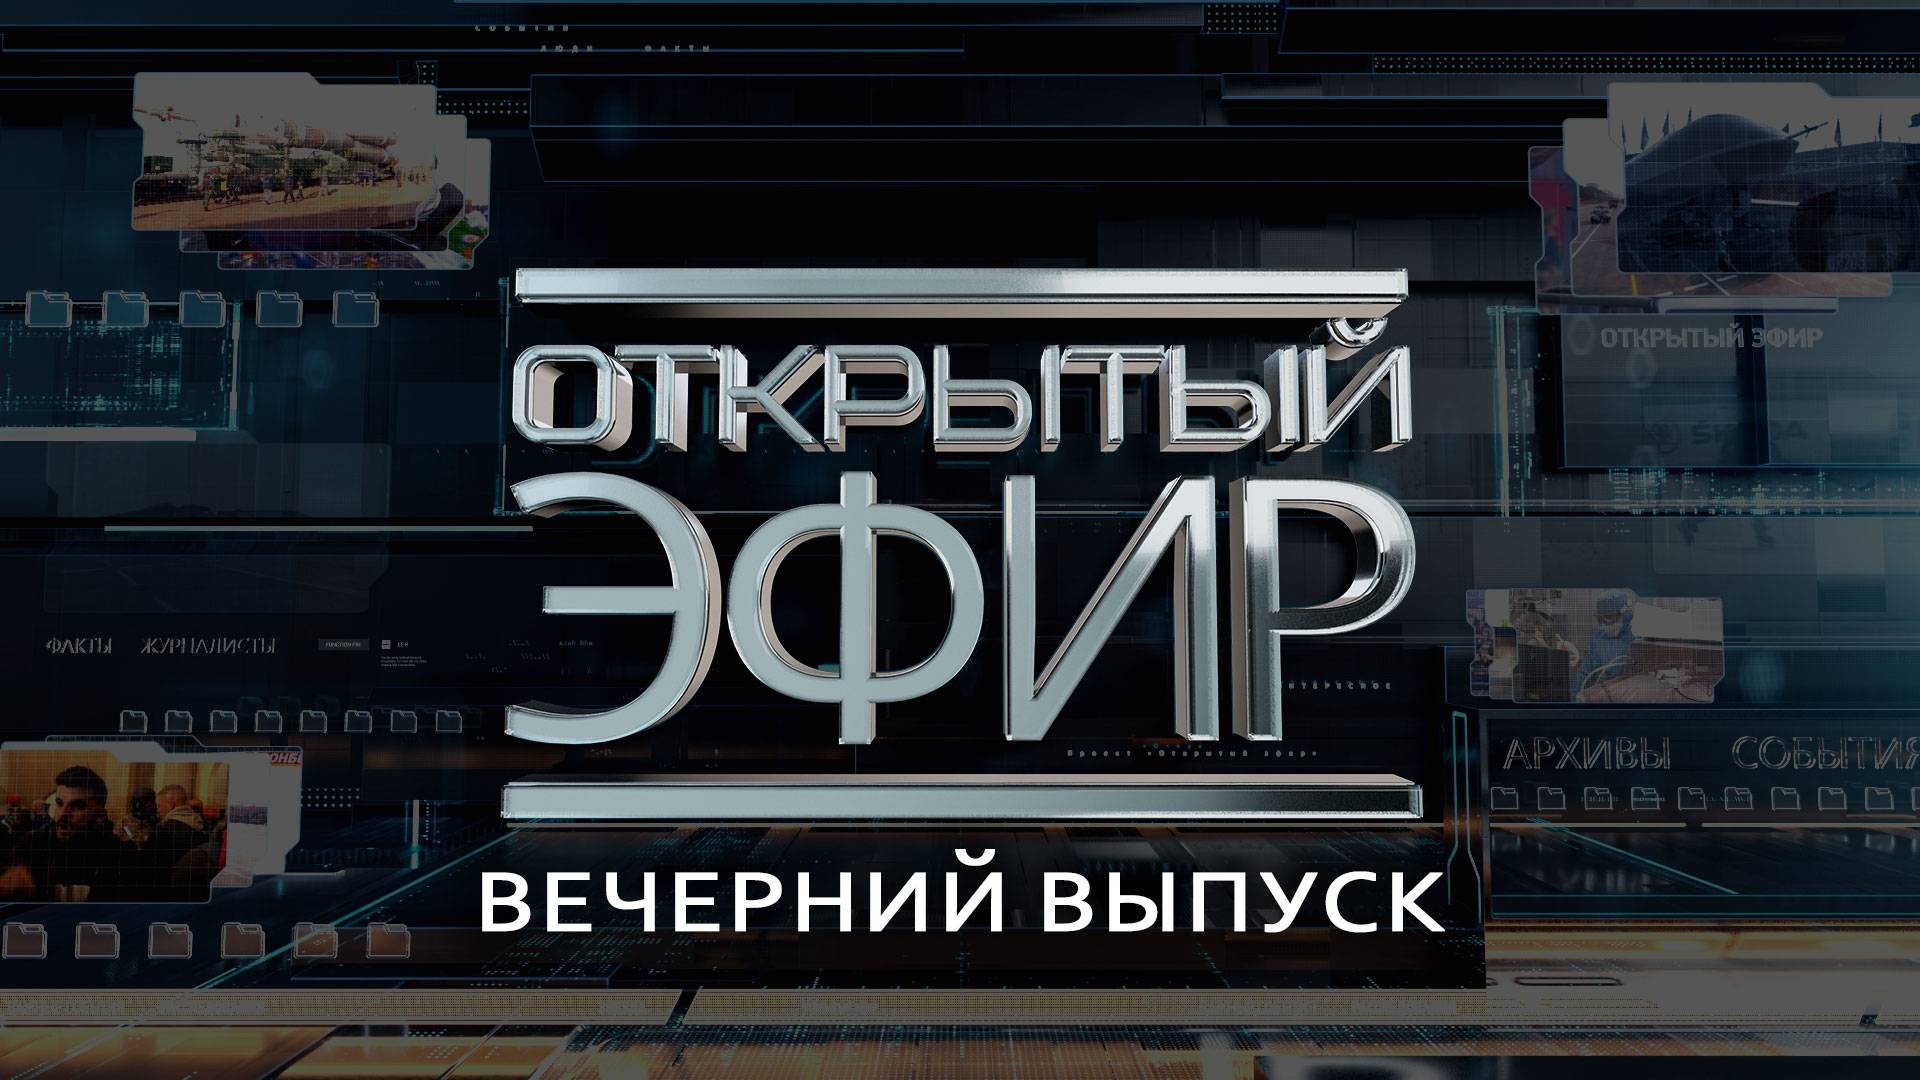 "Открытый эфир" о специальной военной операции в Донбассе. День 687